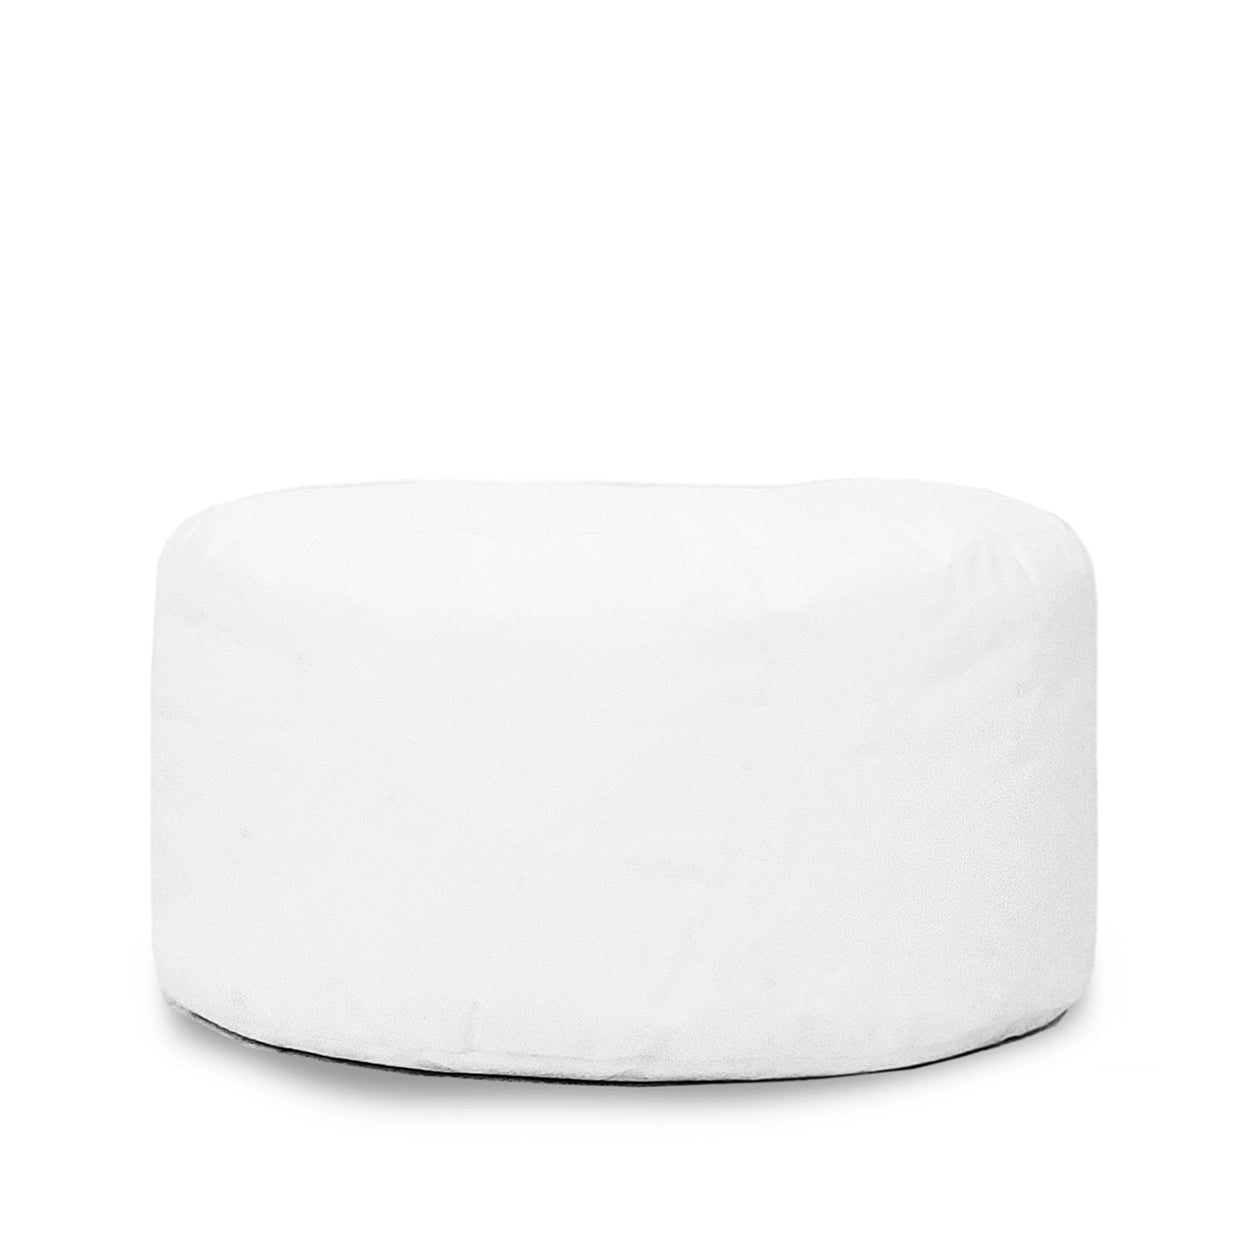 Cazorla Comfy Insert - Pillow Filler